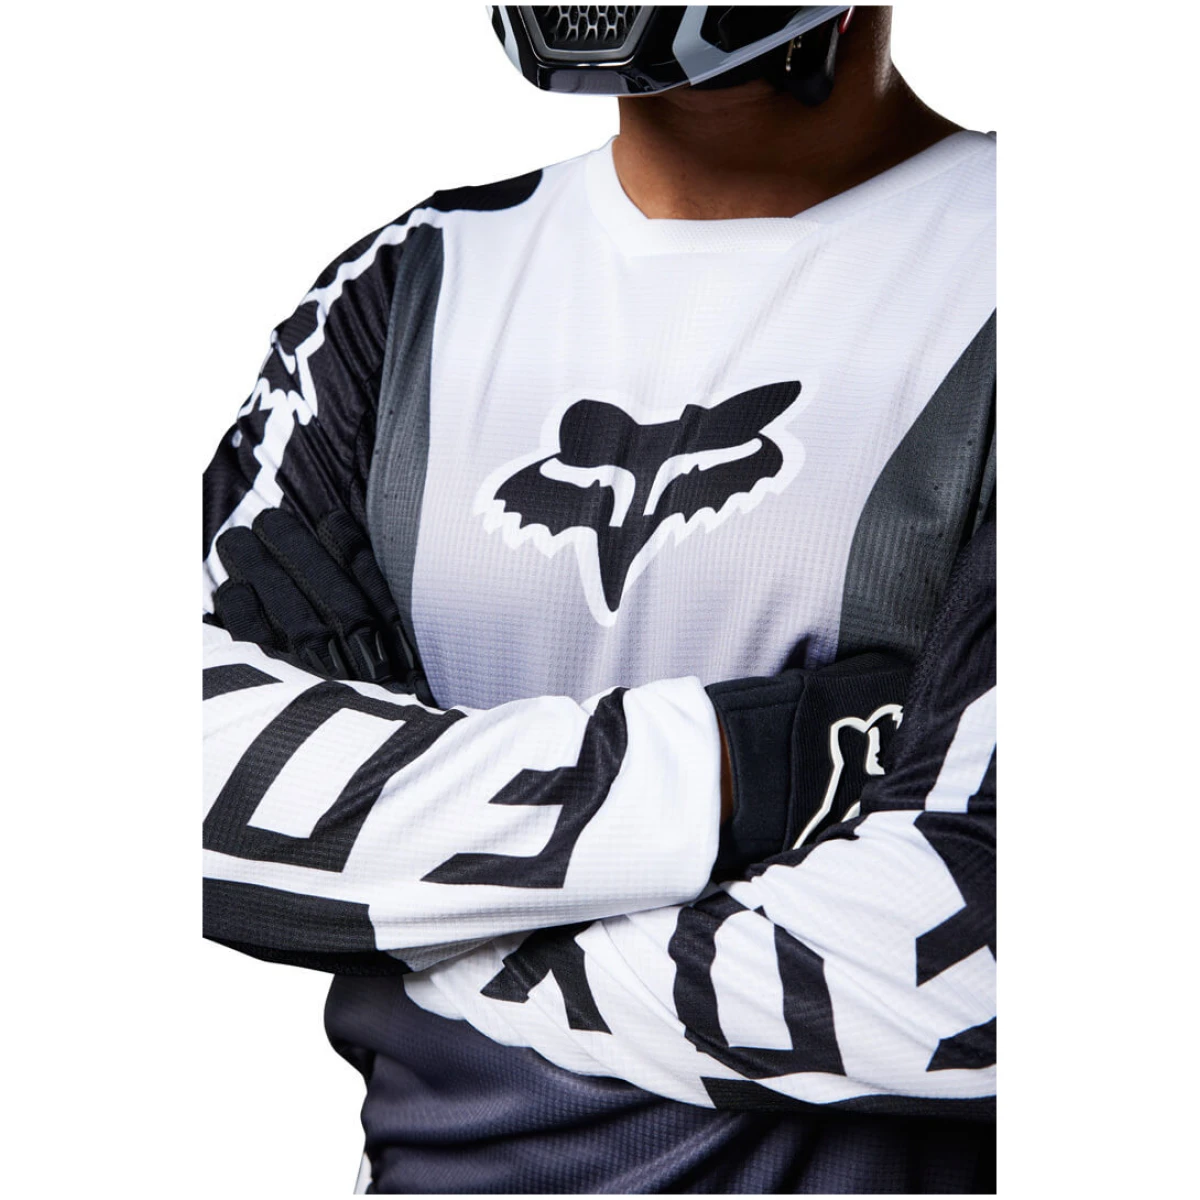 Fox 180 Leed Motocross Jersey